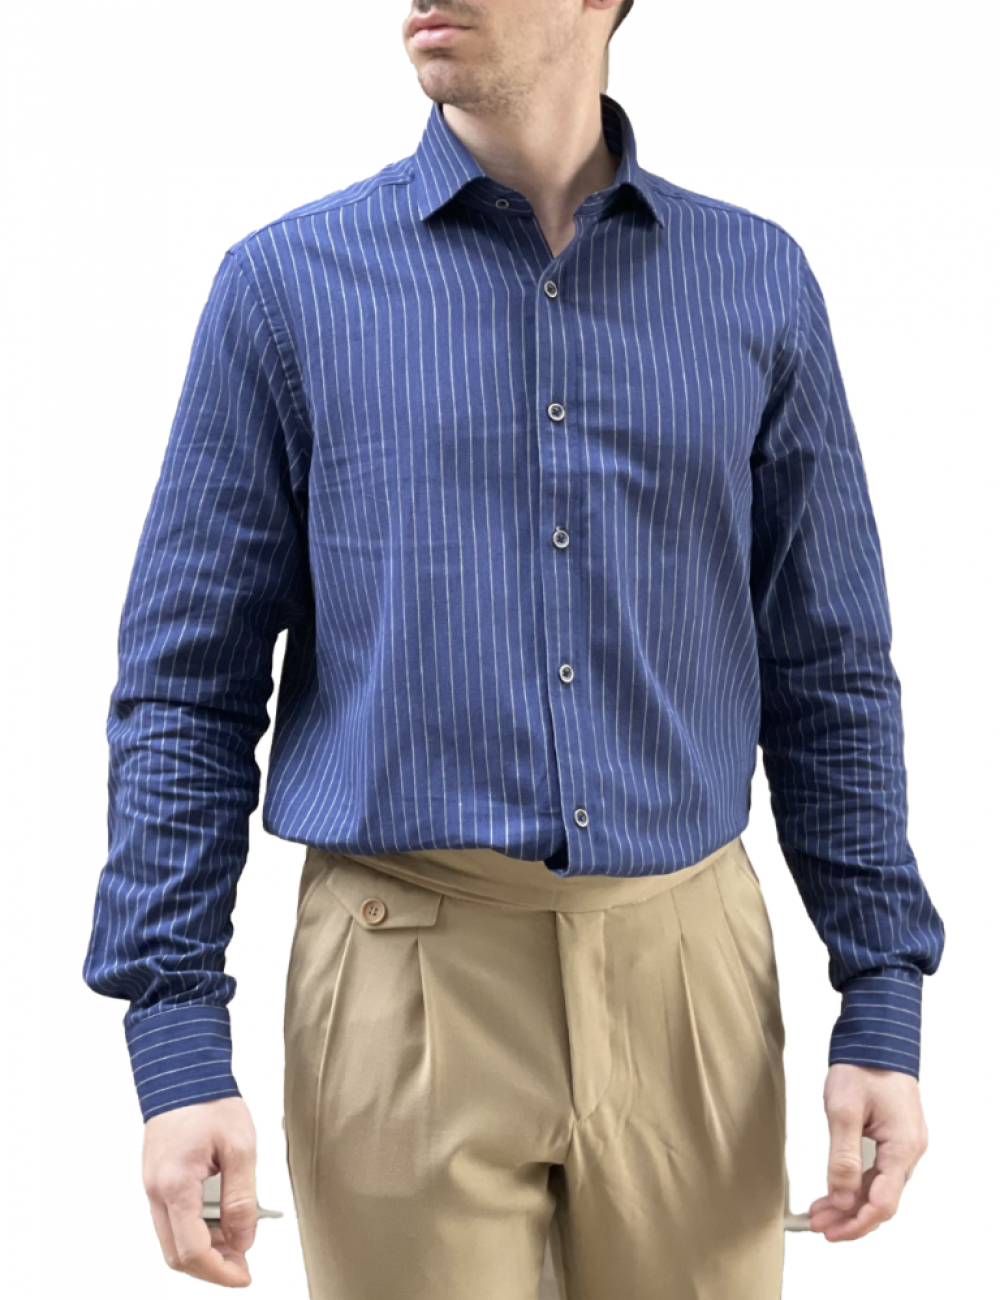 Ανδρικό μπλε με ρίγα μακρυμάνικο πουκάμισο BR145129B